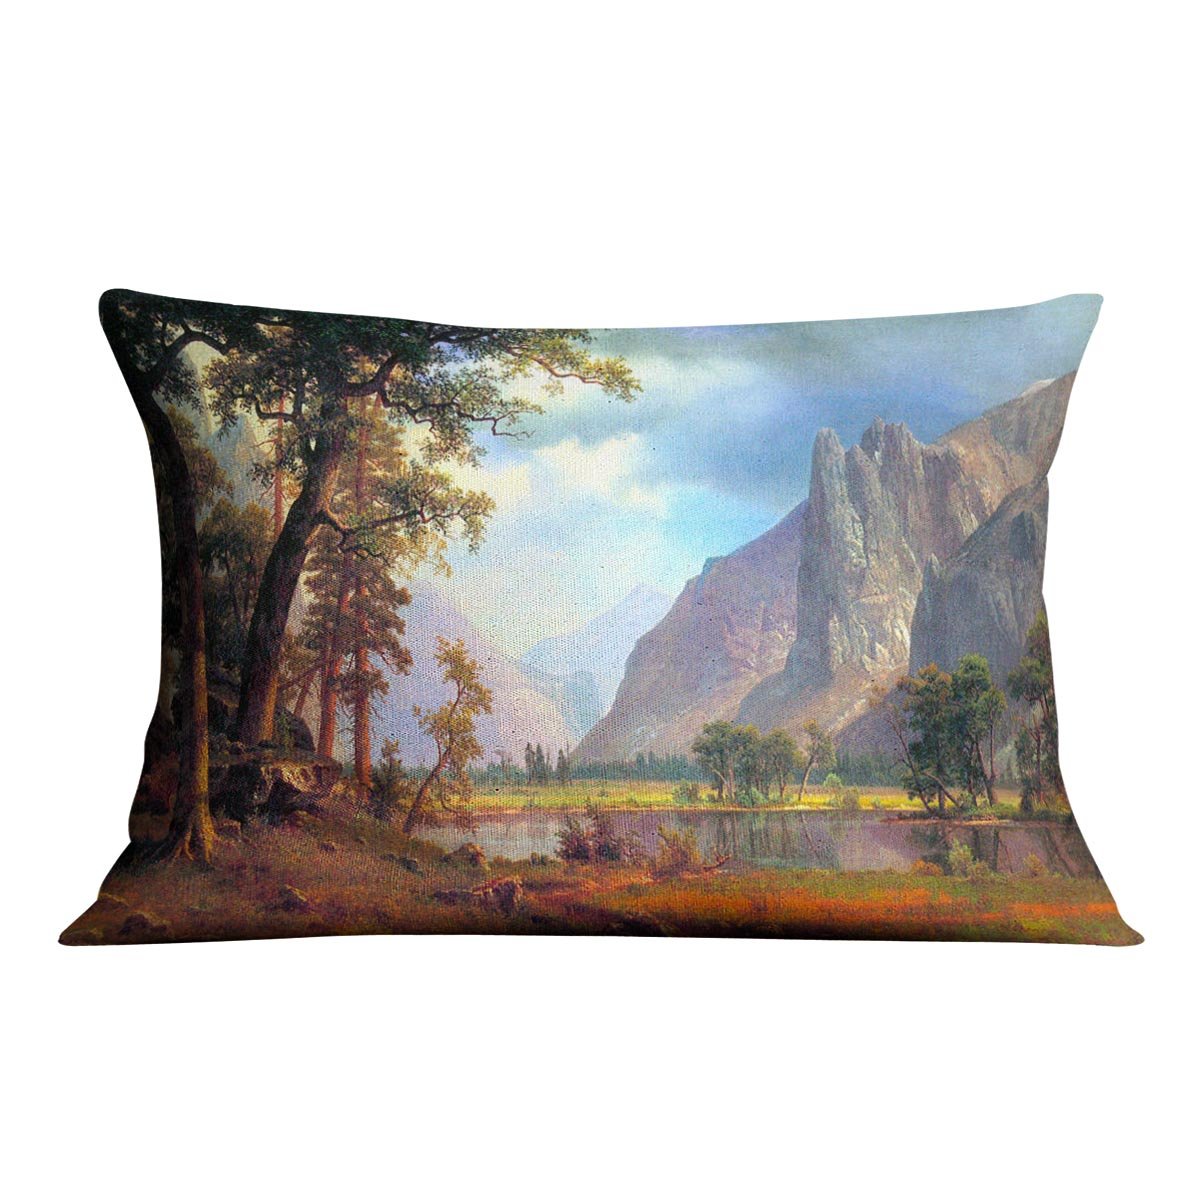 Yosemite Valley 2 by Bierstadt Cushion - Canvas Art Rocks - 4